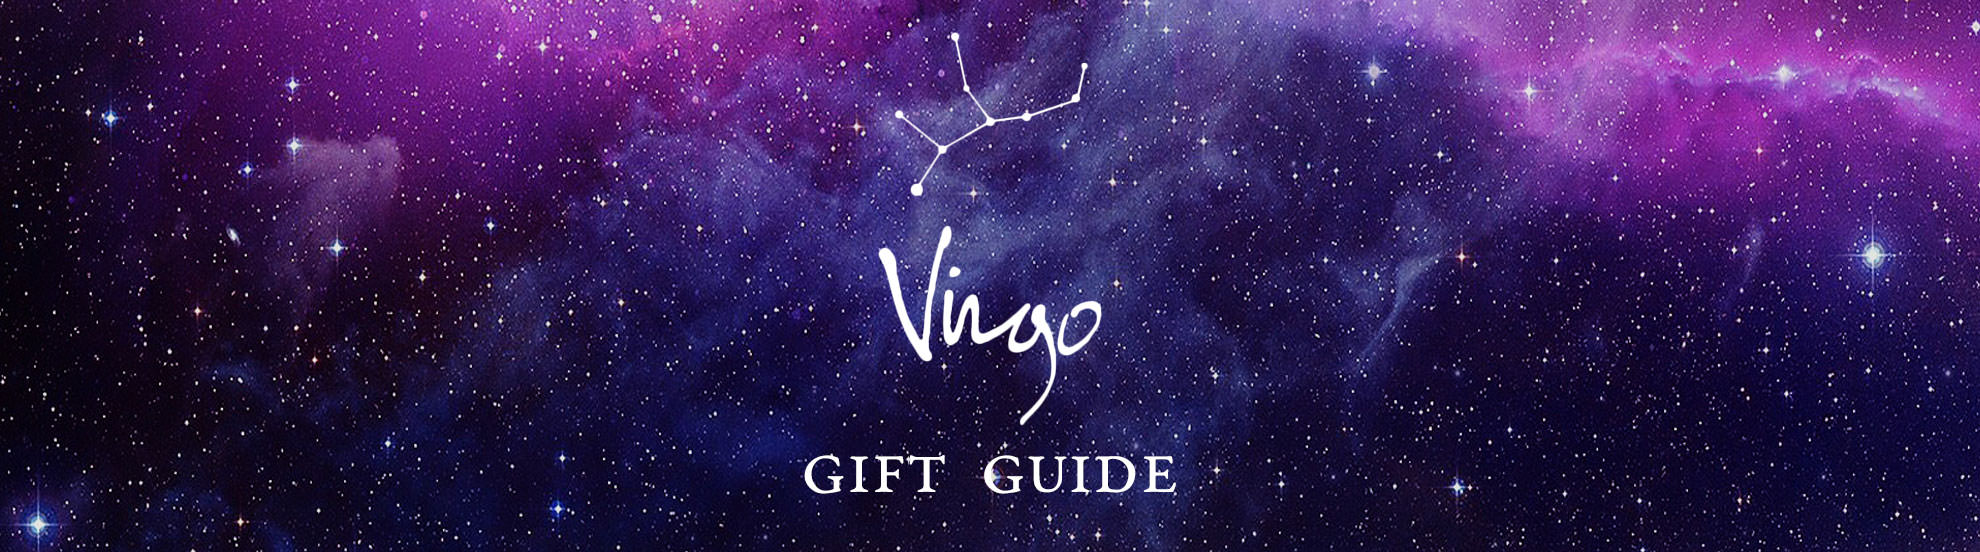 Virgo Gift Guide